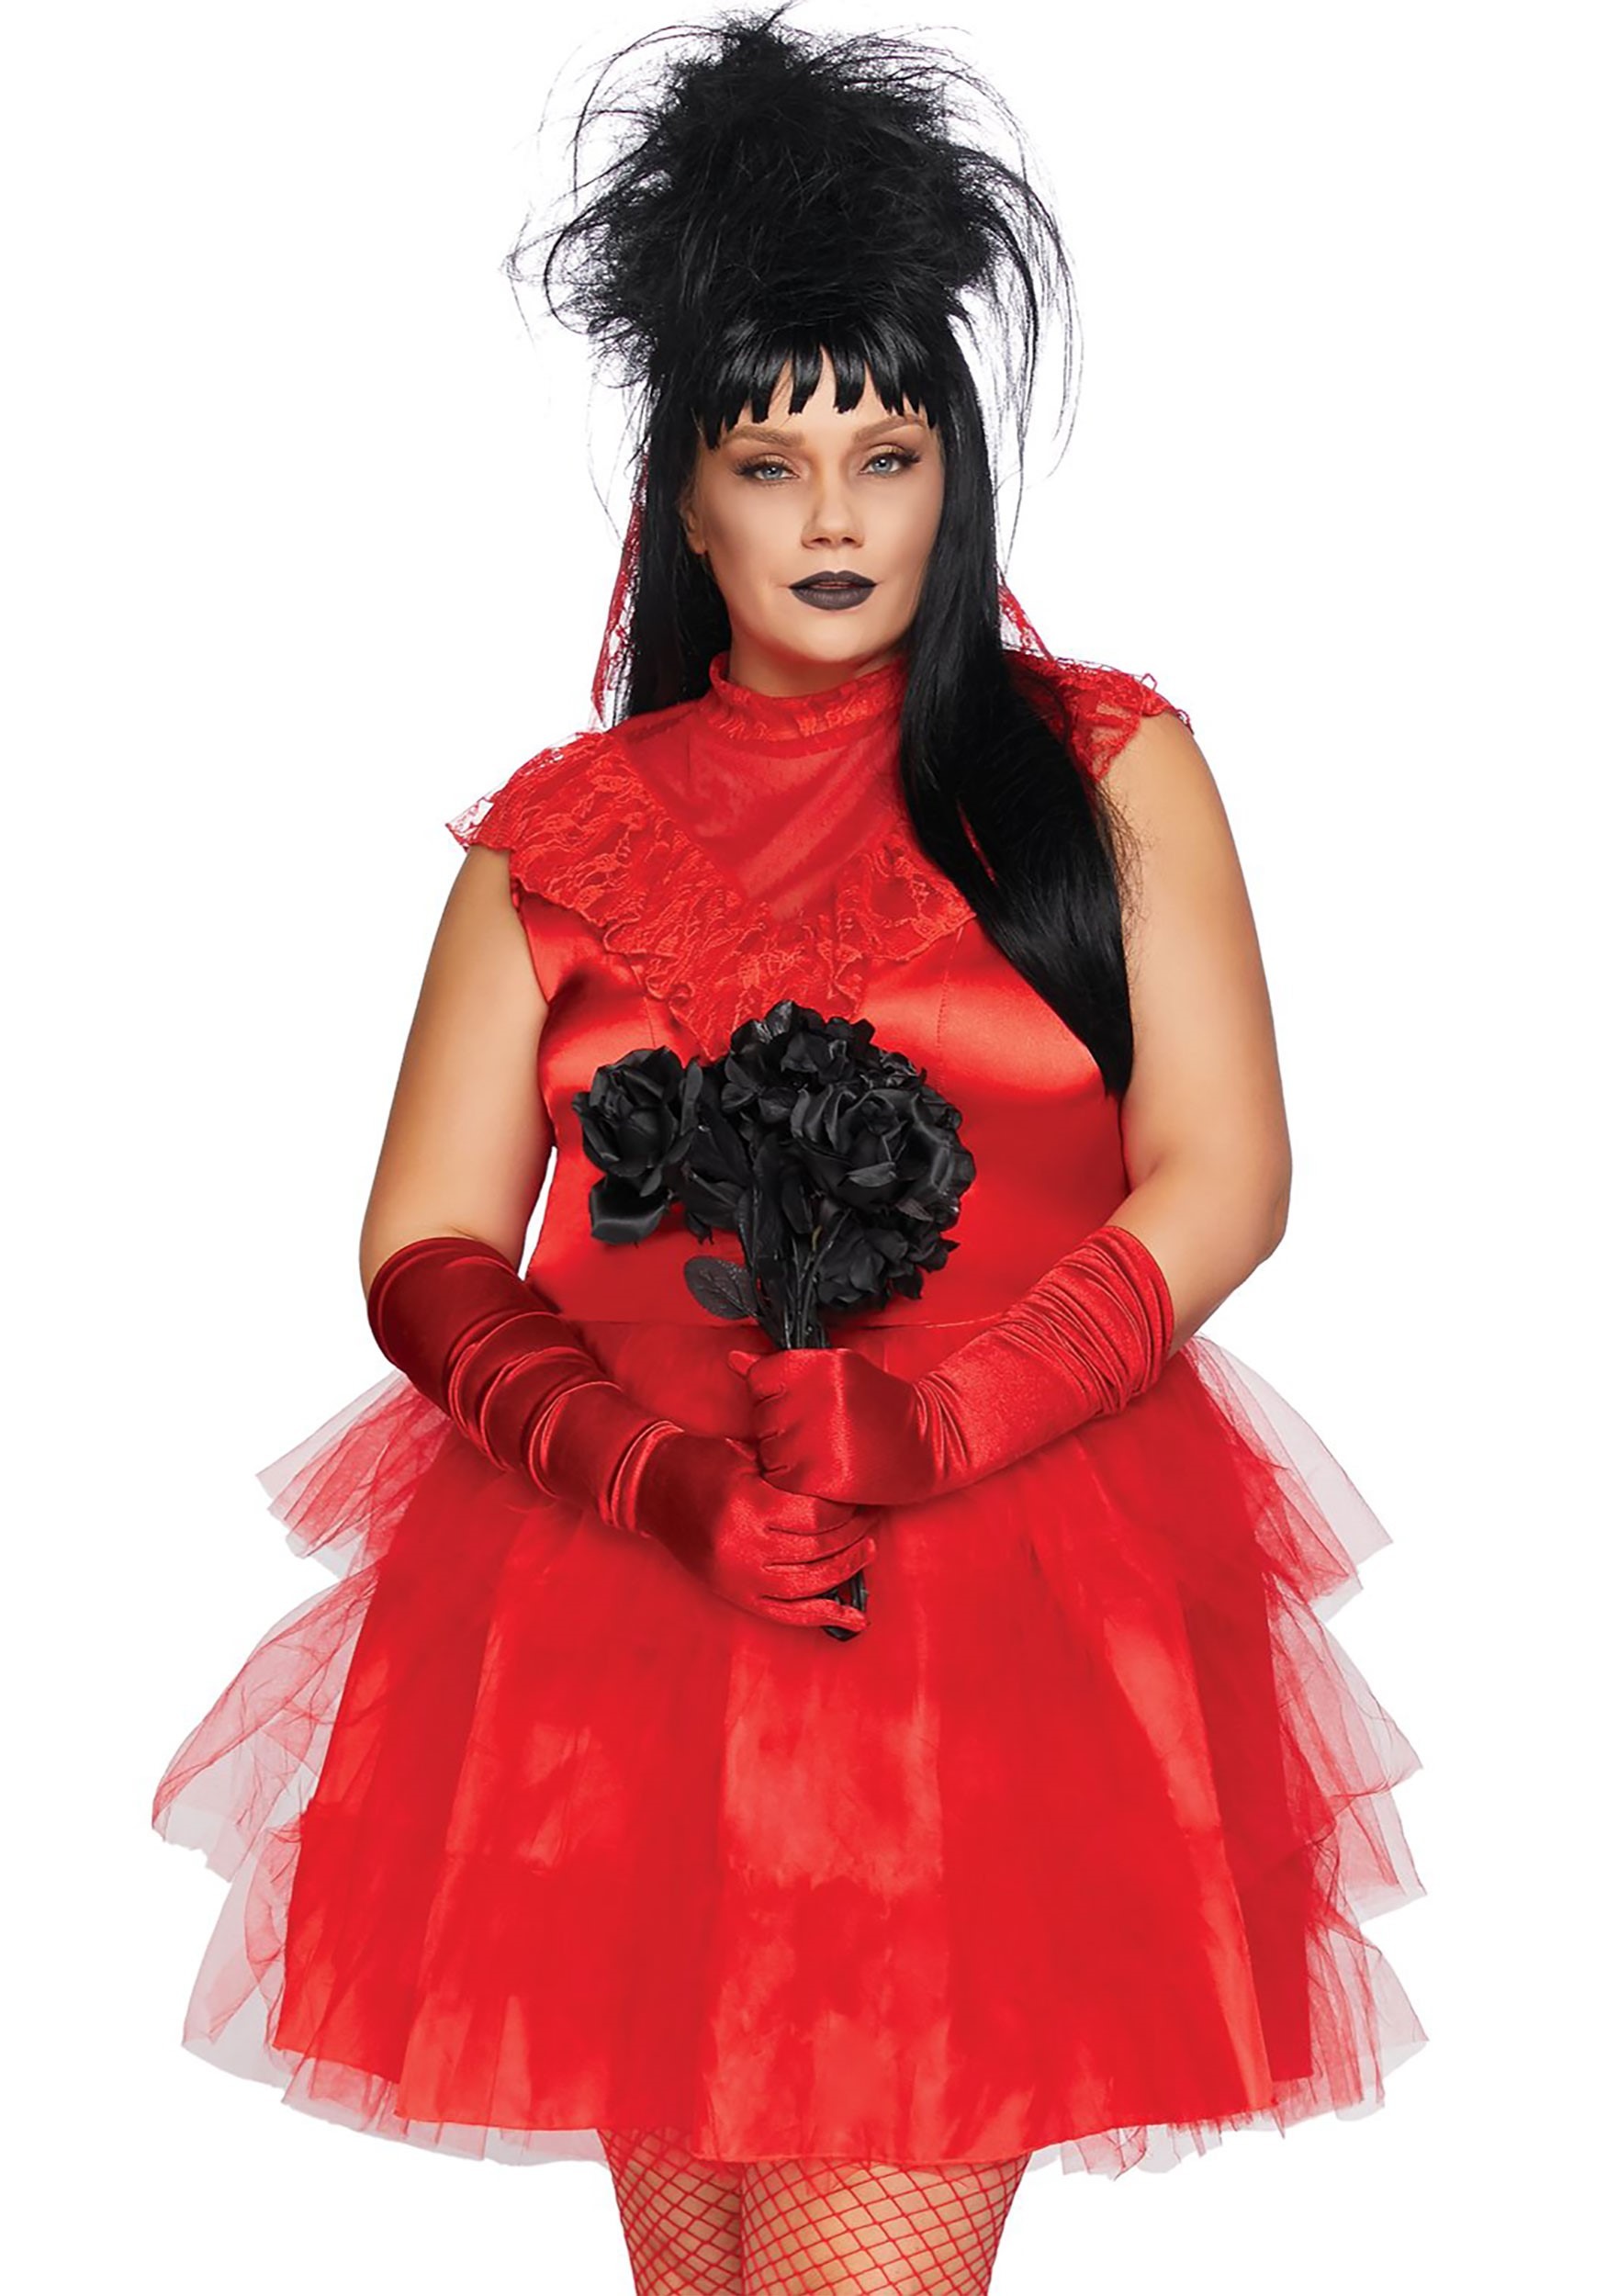 Photos - Fancy Dress MKW Leg Avenue Women's Plus Size Beetle Bride Costume Red LE86730X 